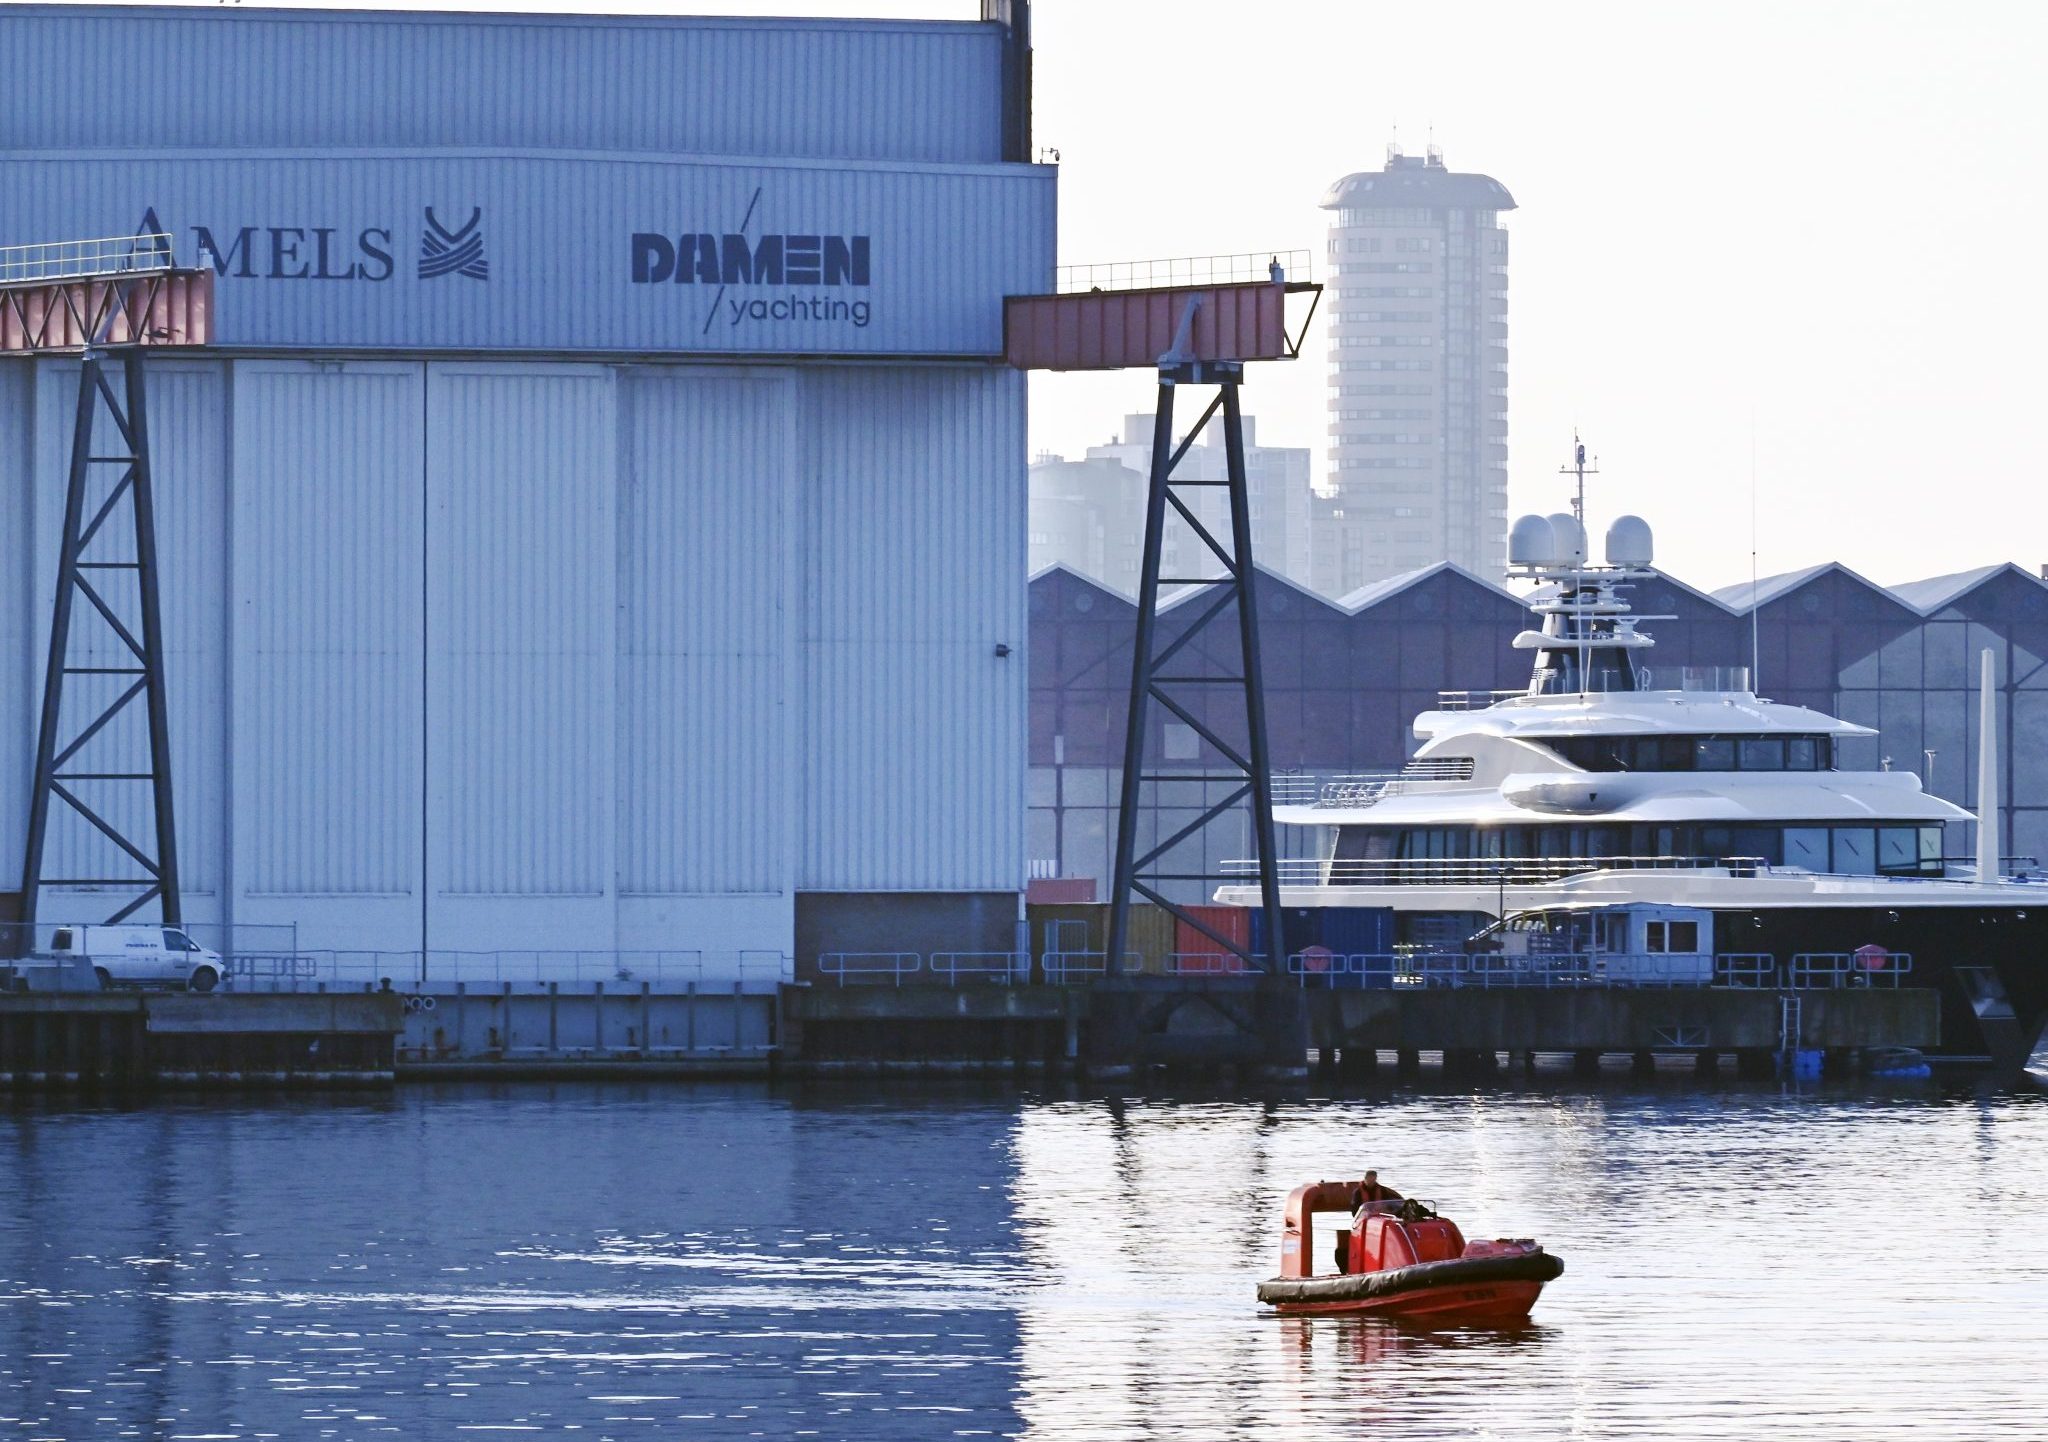 Scheepswerf Damen Superjachtbouwer in Vlissingen Zeeland. / scheepsbouwer van exclusieve superjachten / Scheepsbouwer Amels maakt deel uit van de Damen Shipyards Group. foto: ANP / Hollandse Hoogte / Peter Hilz